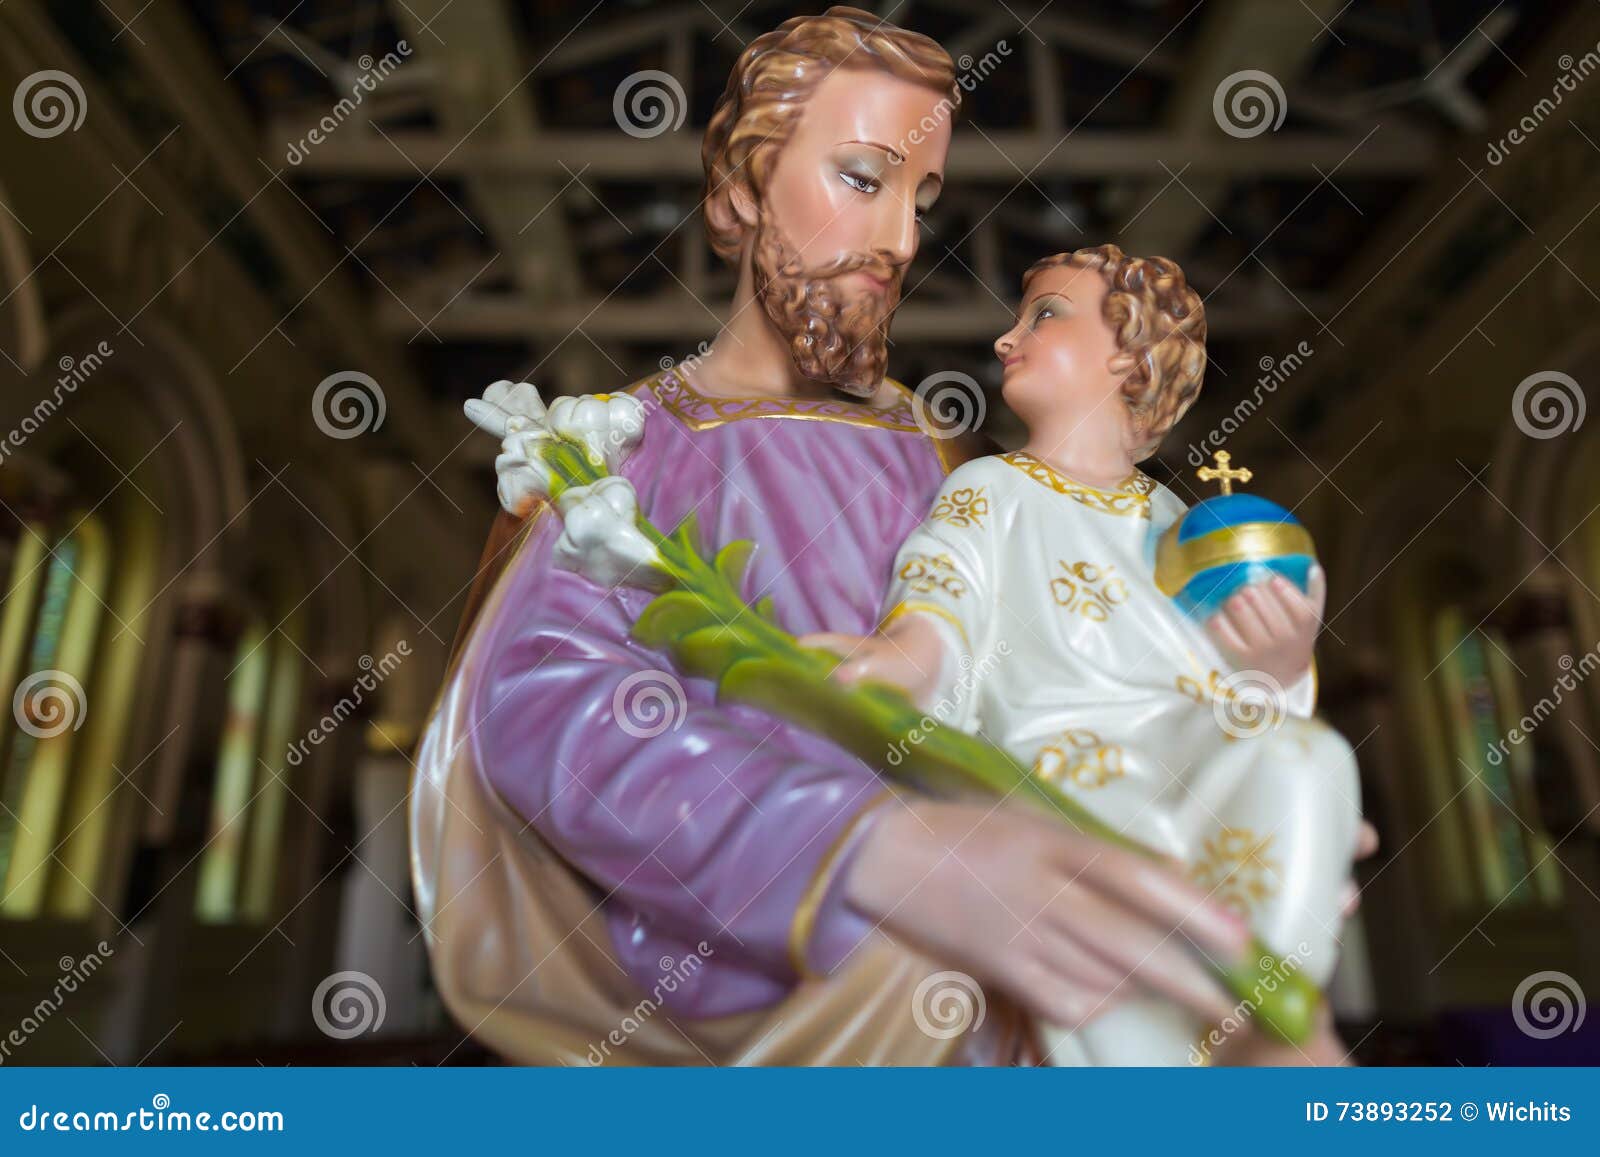 圣若瑟和圣洁小耶稣 库存照片. 图片 包括有 约瑟夫, 圣洁, 婴孩, 幸福, 圣徒, 天主教徒, 父亲 - 69916118